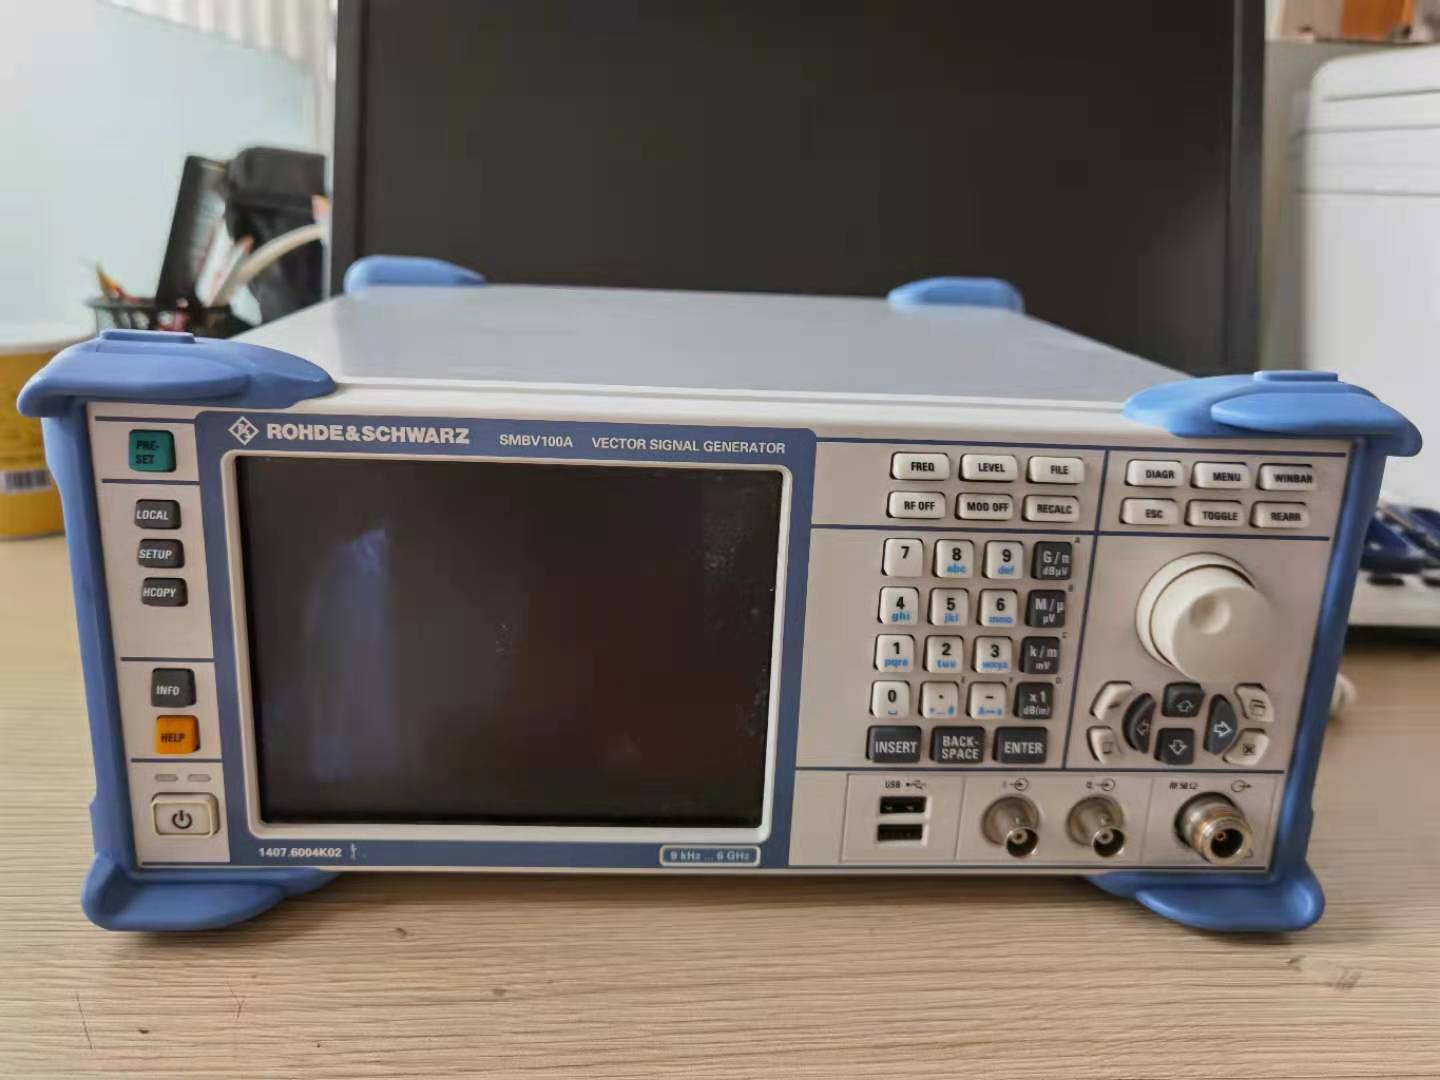 出租 销售 二手德国 罗德施瓦茨SMBV100A矢量信号发生器